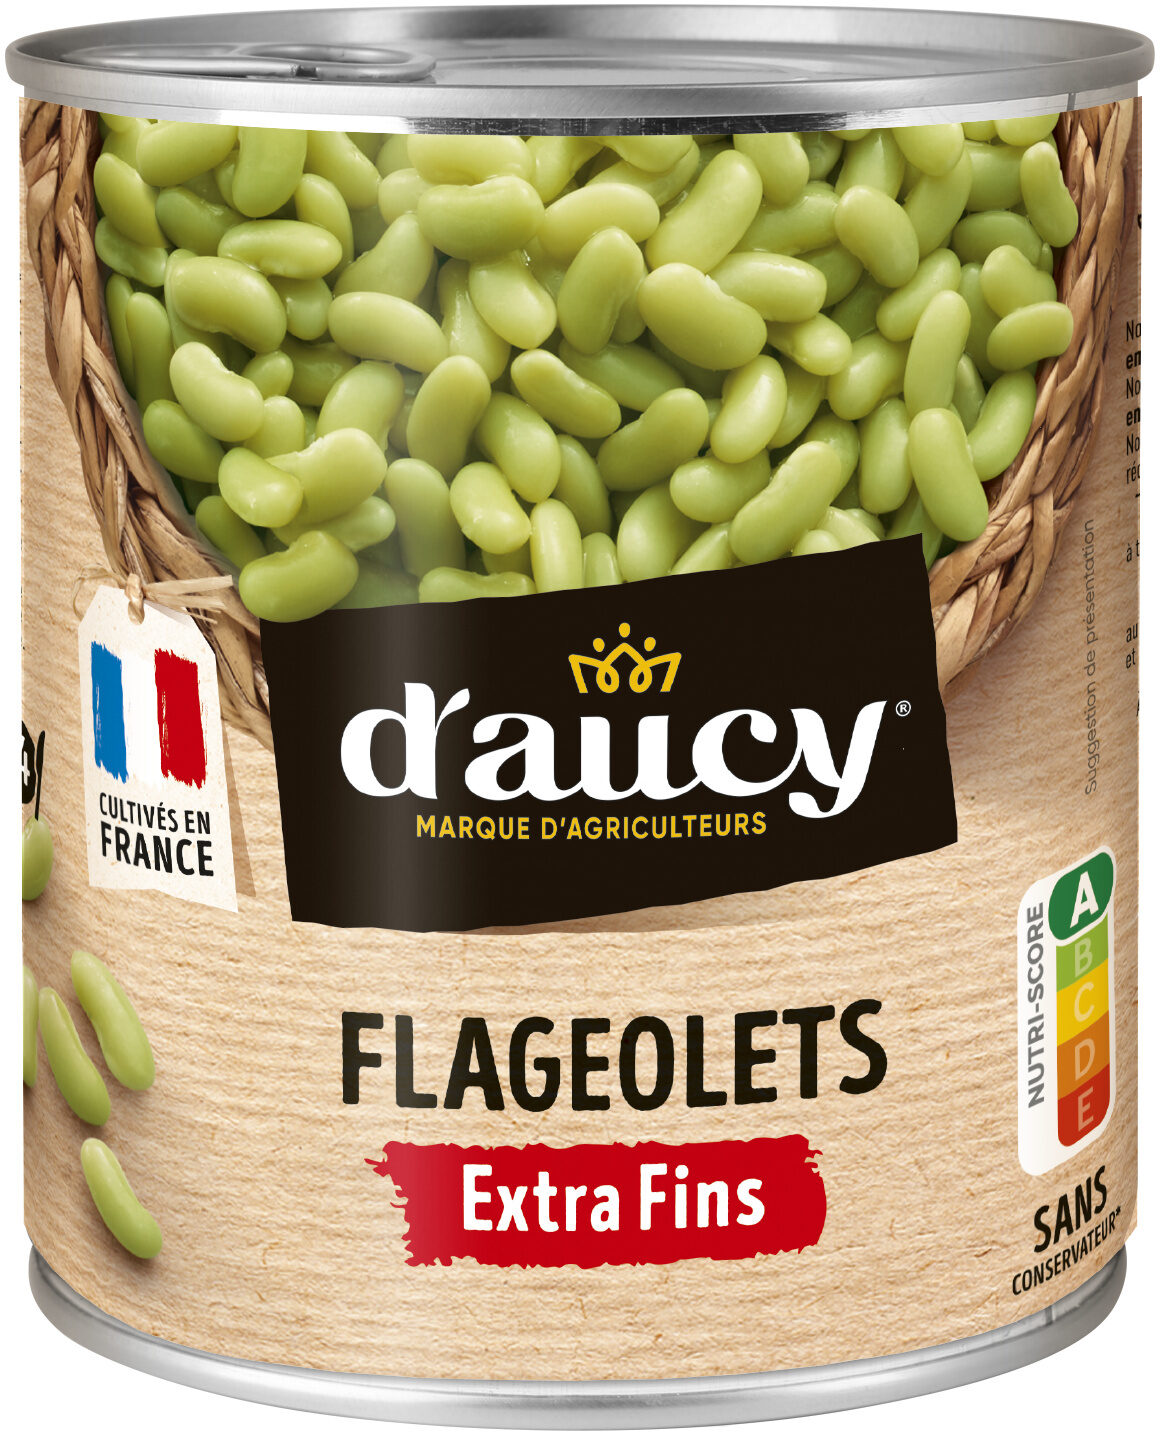 Flageolets extra fins - Producte - fr